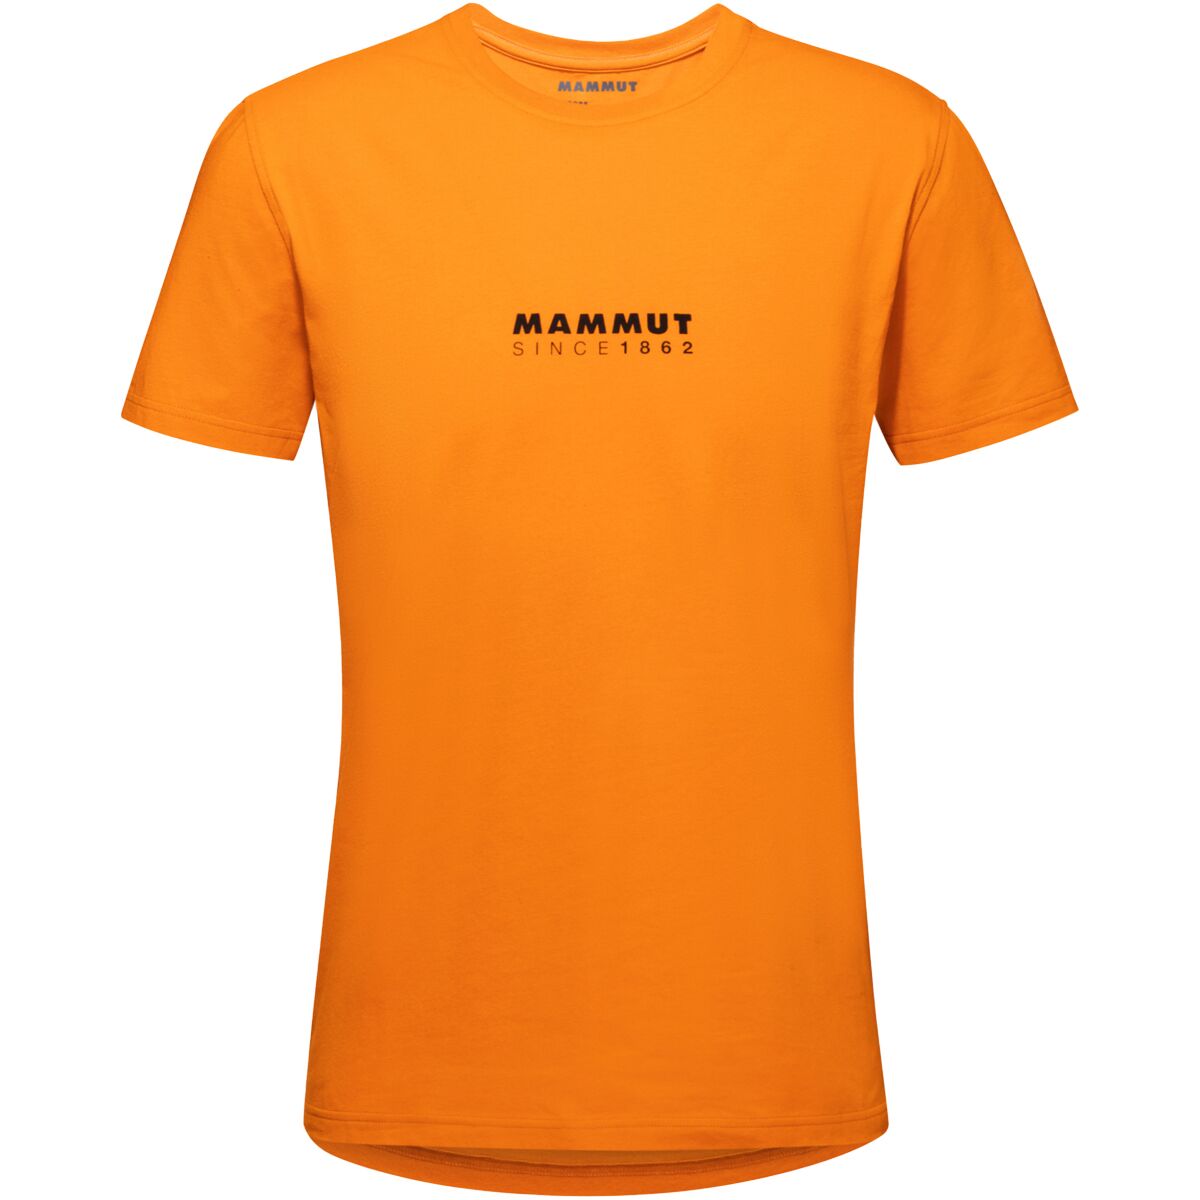 Mammut Logo T-Shirt - Men's